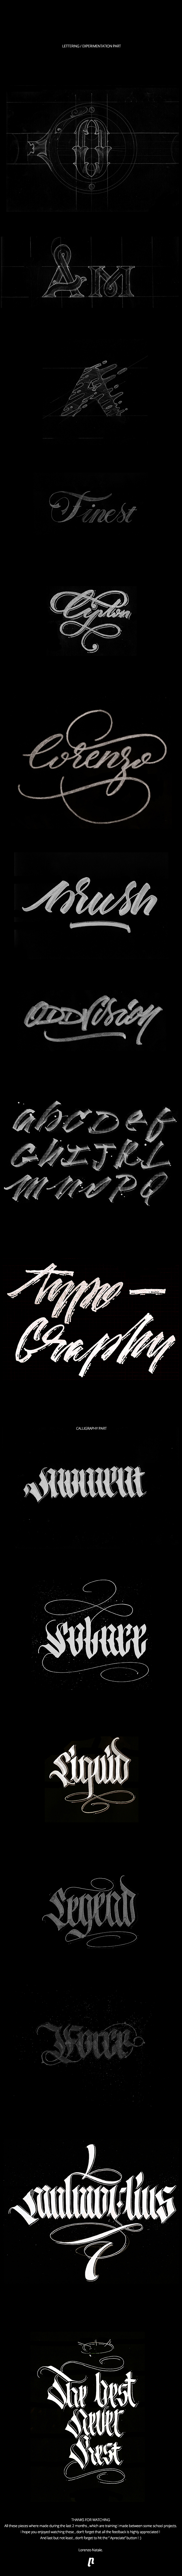 lettering Handlettering Calligrafitti handwritting Custom type